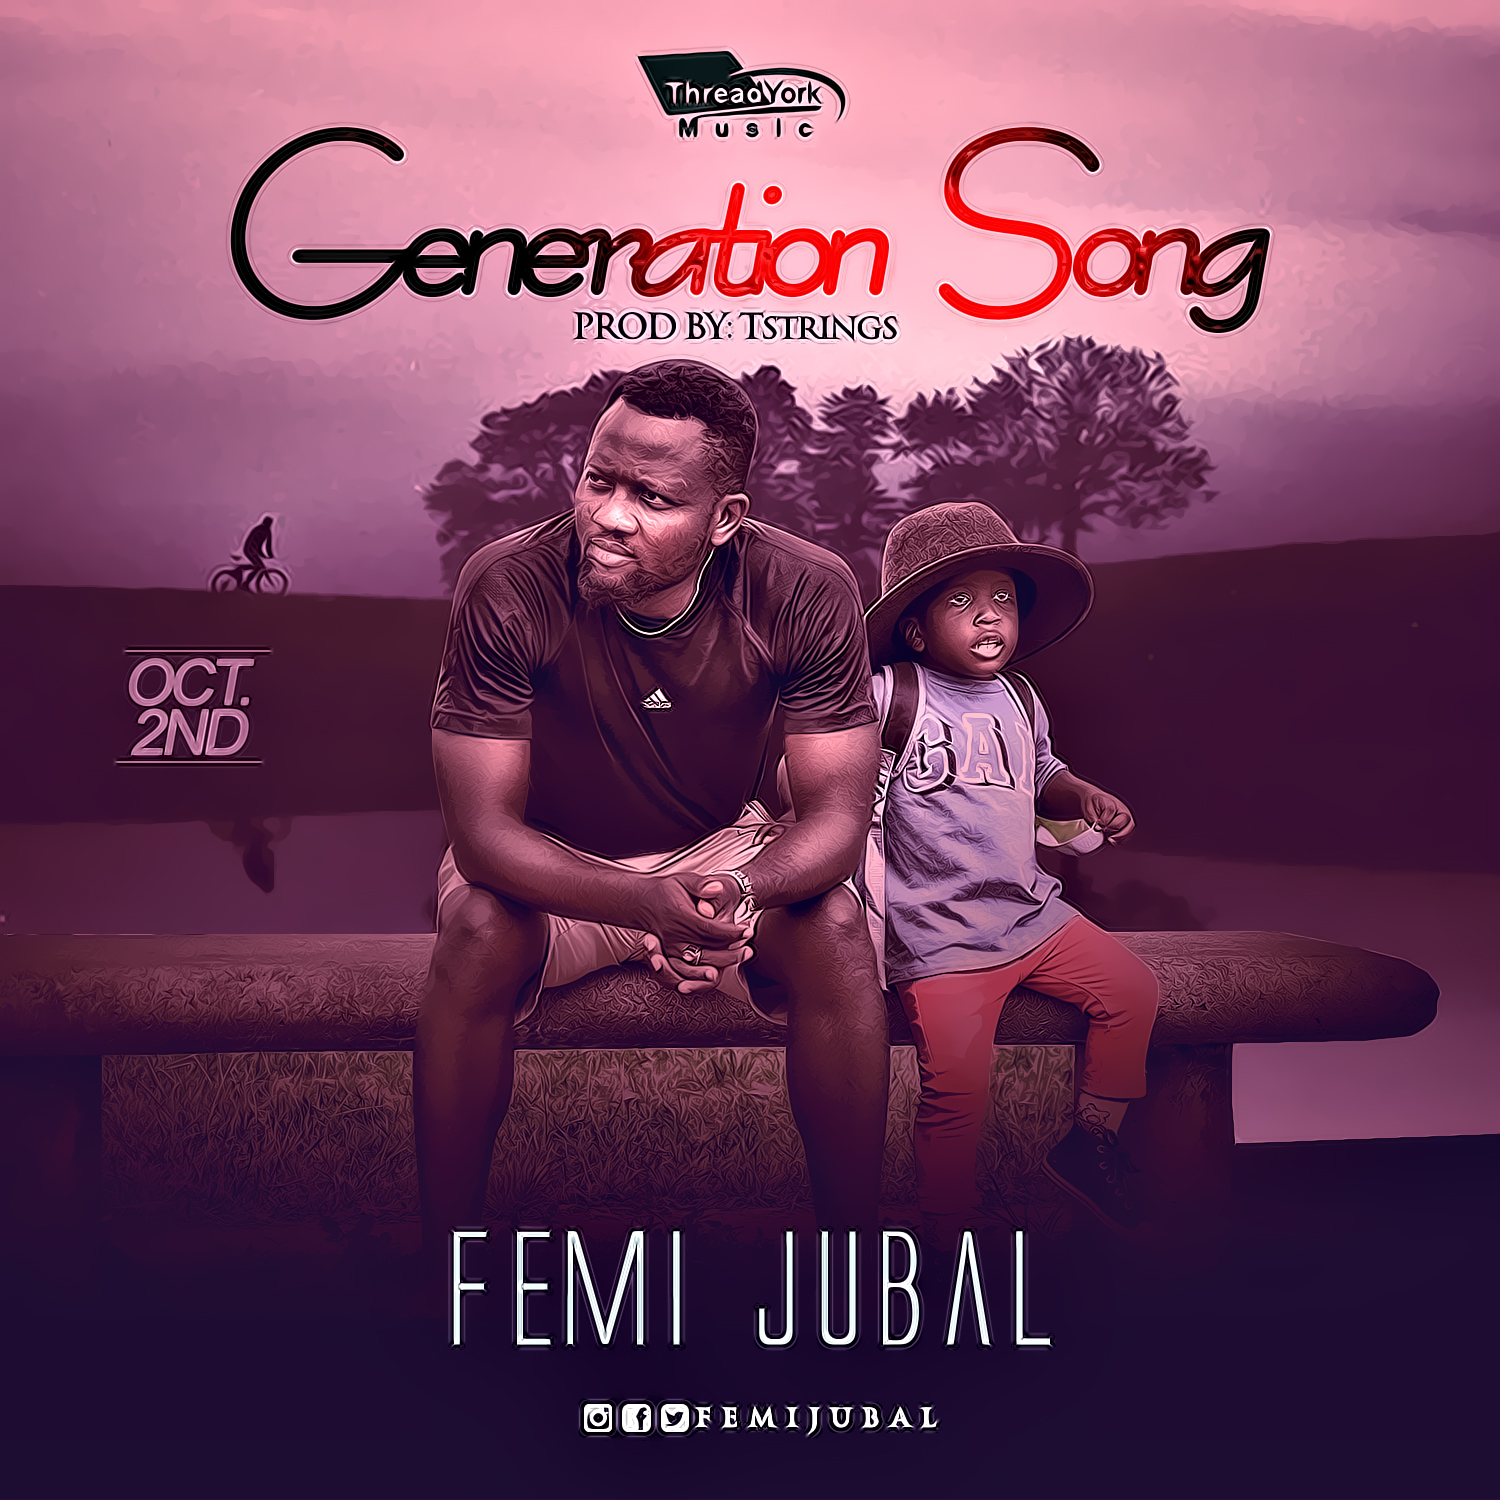 DOWNLOAD Music: Femi Jubal - Generation Song 